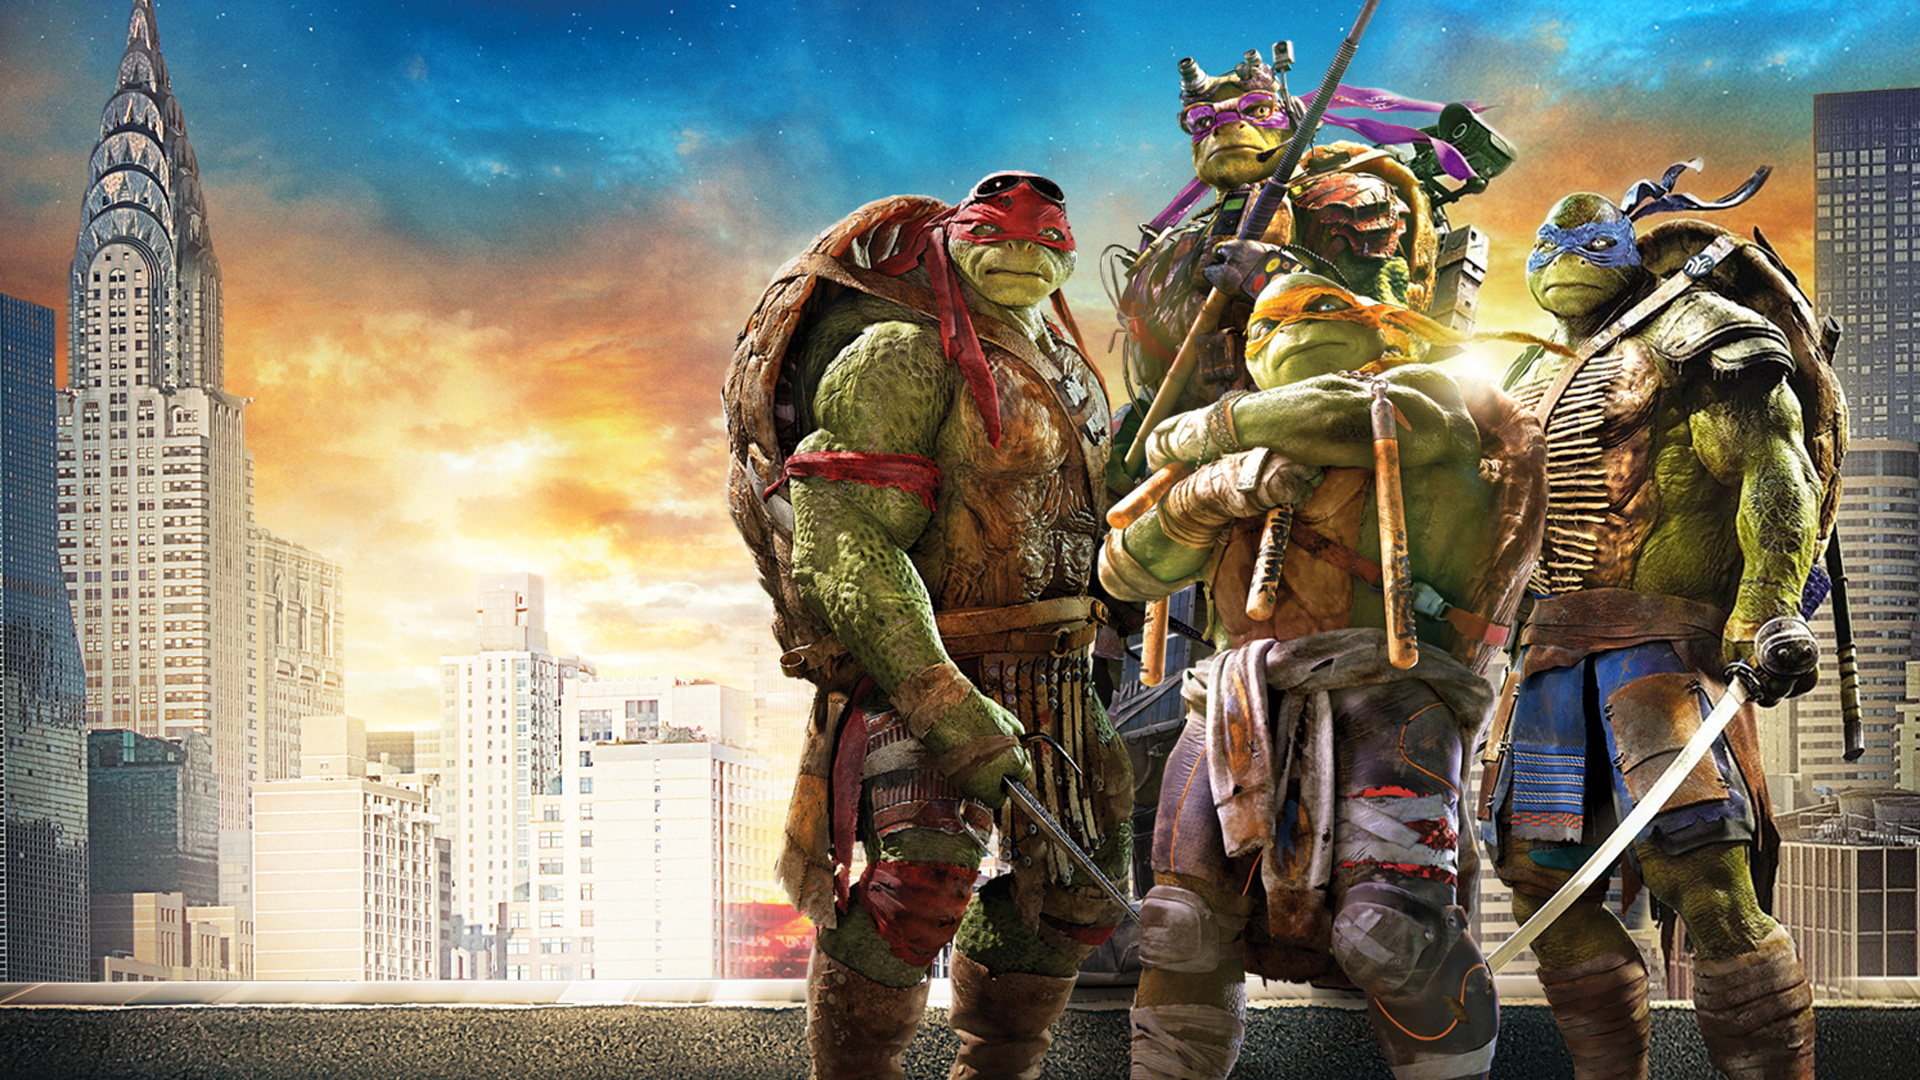 teenage mutant ninja turtles (2014), teenage mutant ninja turtles, movie, donatello (tmnt), leonardo (tmnt), michelangelo (tmnt), raphael (tmnt)